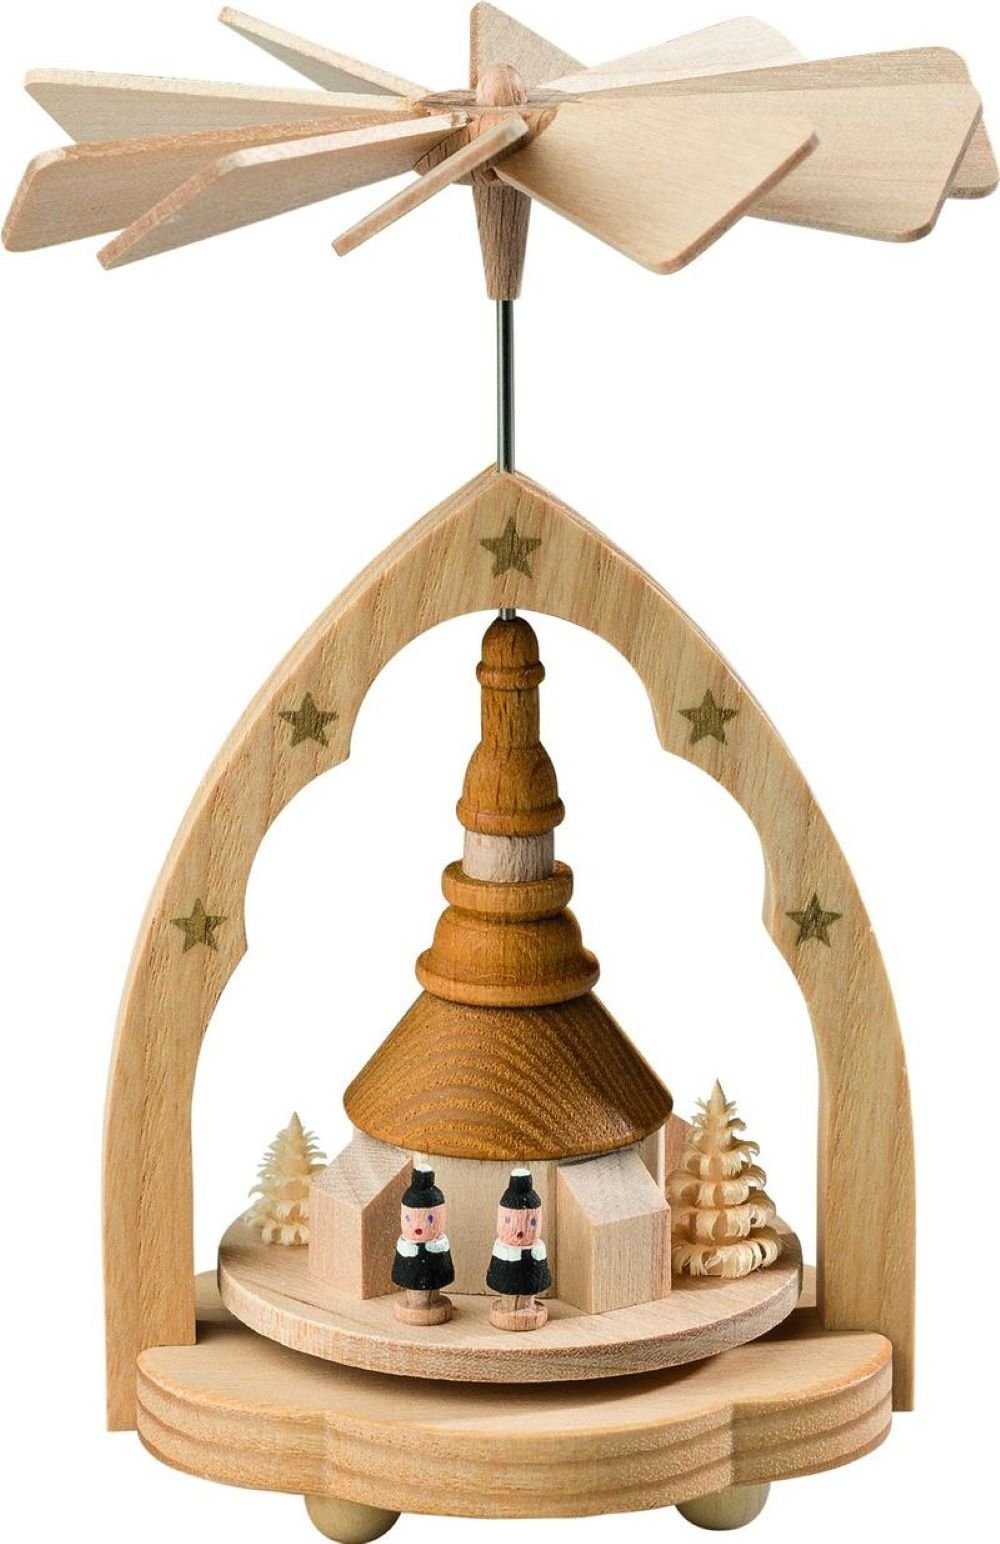 Handwerkskunst Seiffener Richard Weihnachtspyramide Wärmespiel 11cm, Höhe original Glaesser Erzgebirge Kirche,